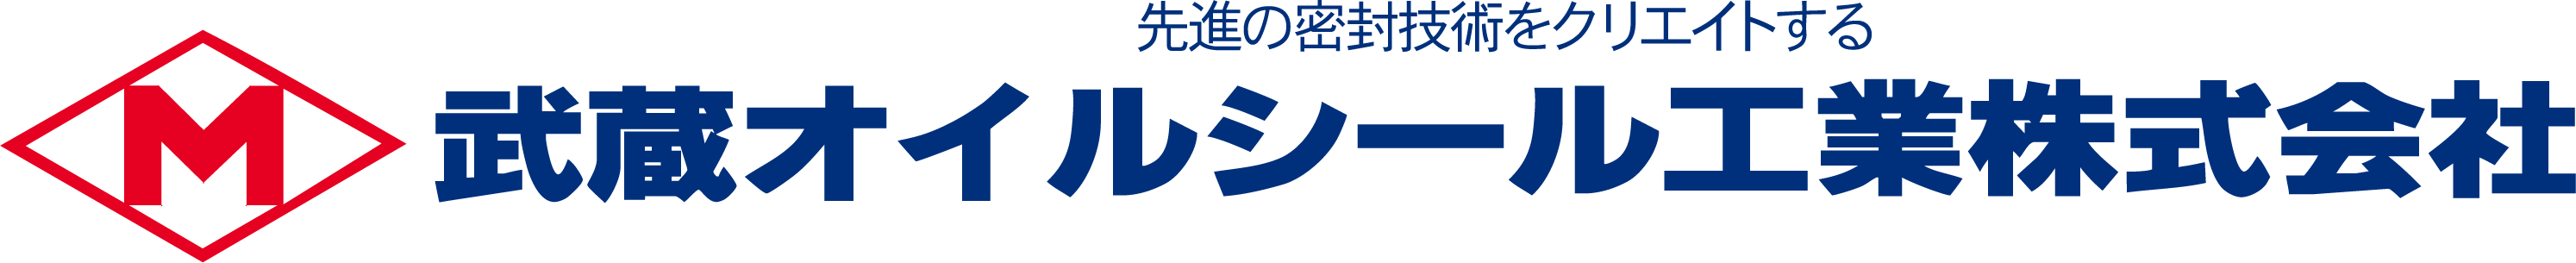 エンジン用オイルシール - 武蔵オイルシール工業株式会社